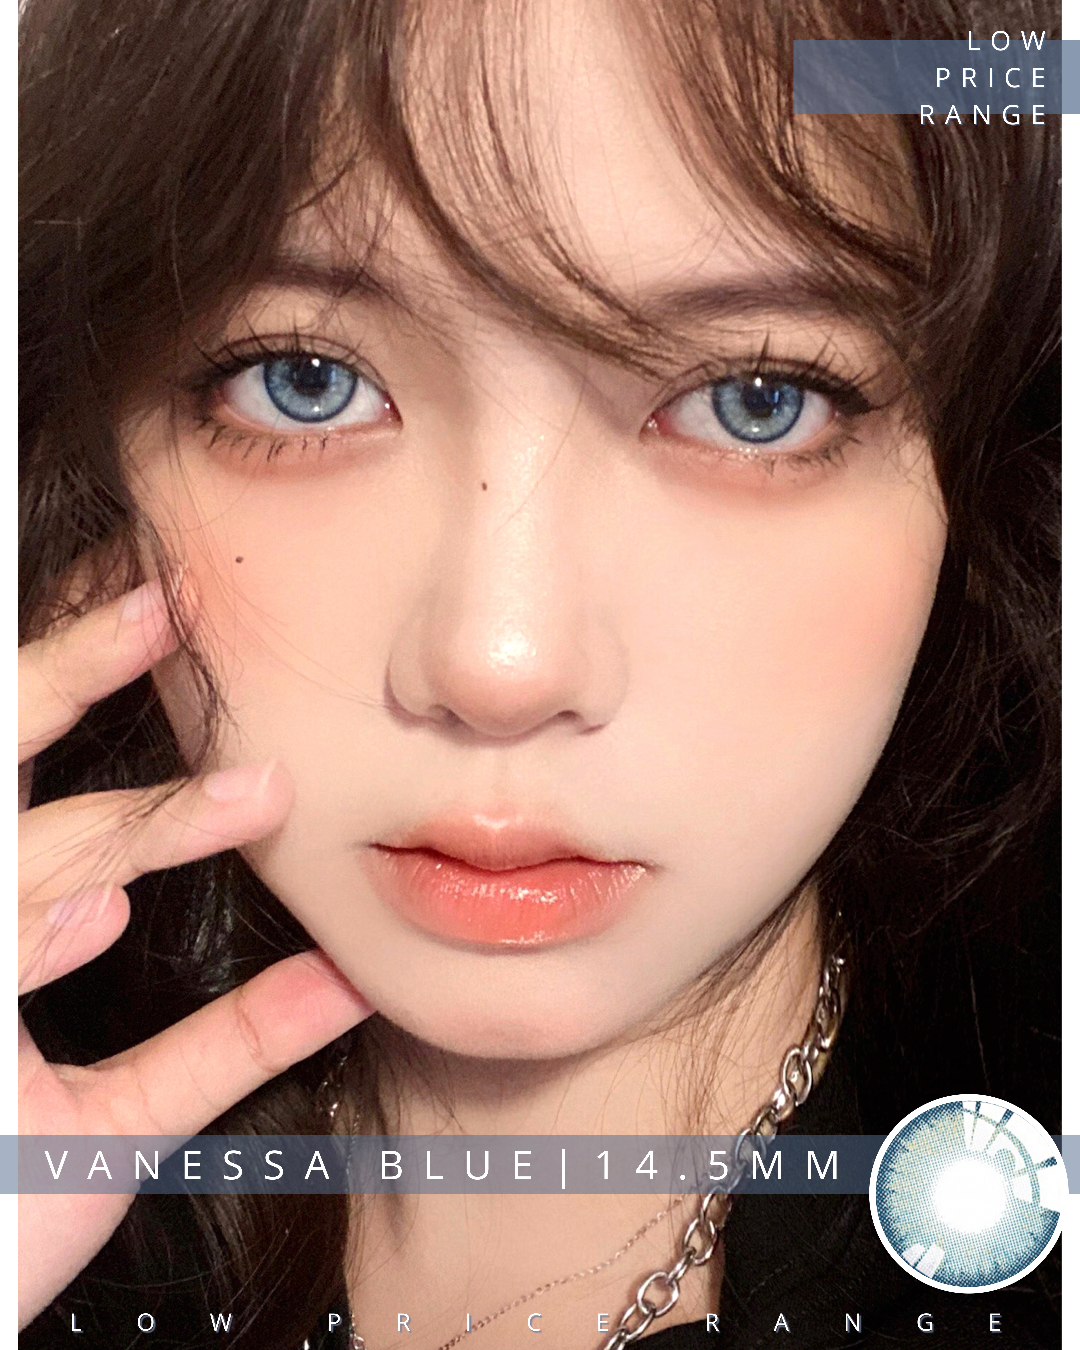 Vanessa blue pics